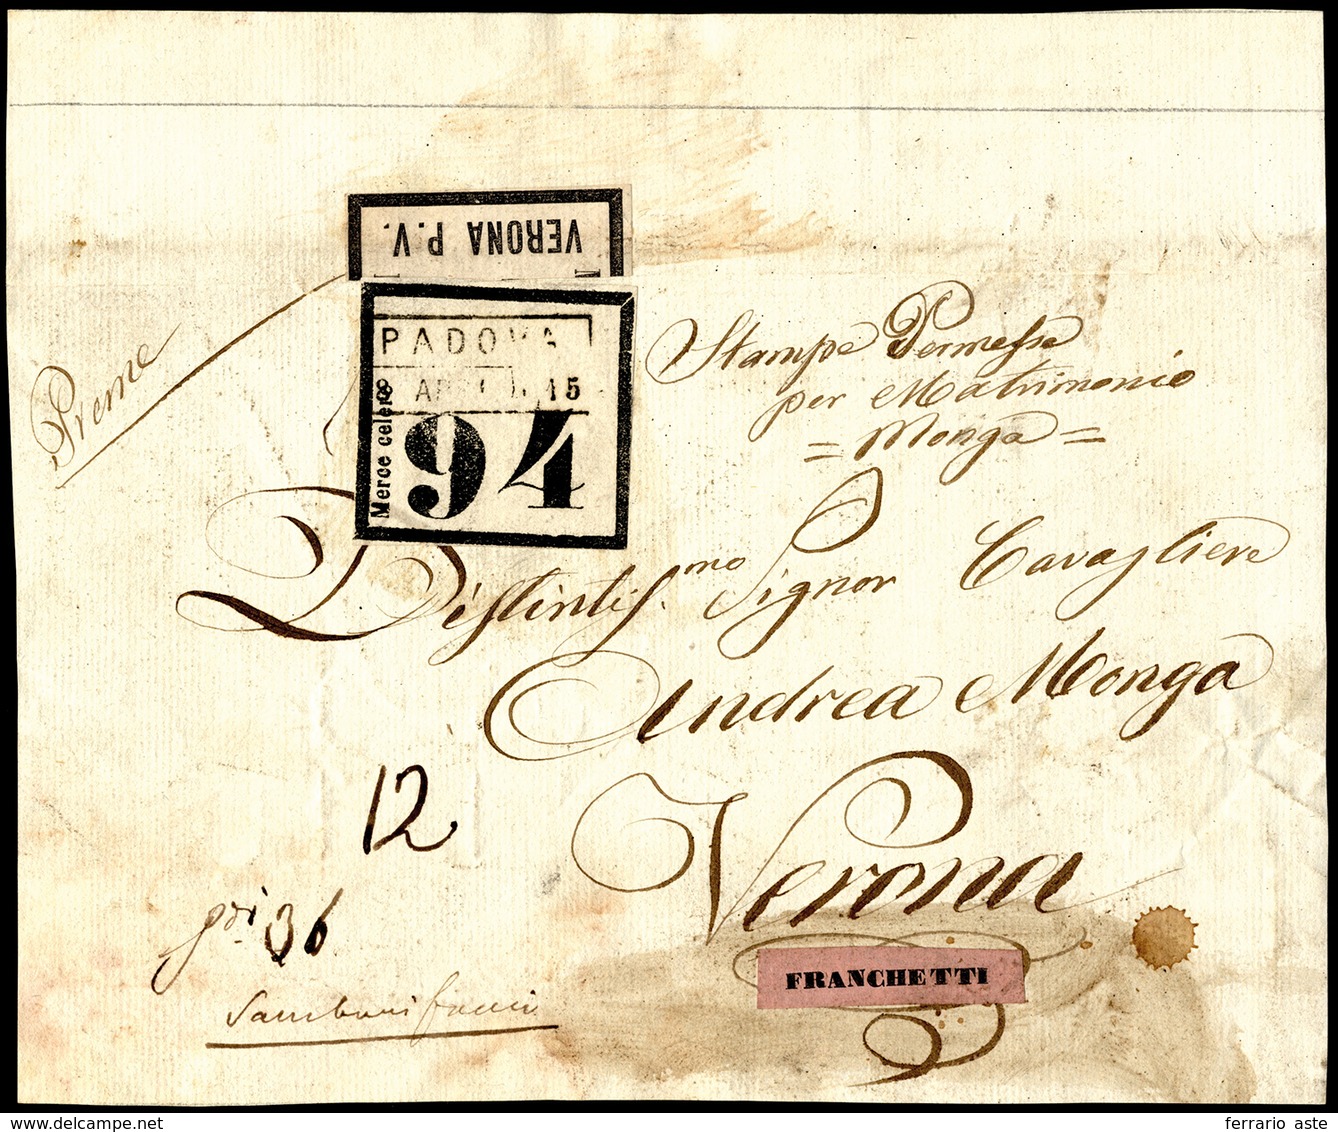 1850 Ca - Frontespizio Di Pacco Da Padova 15/4 A Verona, Etichetta Di "Merce Celere 94" Ed Etichetta... - Lombardije-Venetië